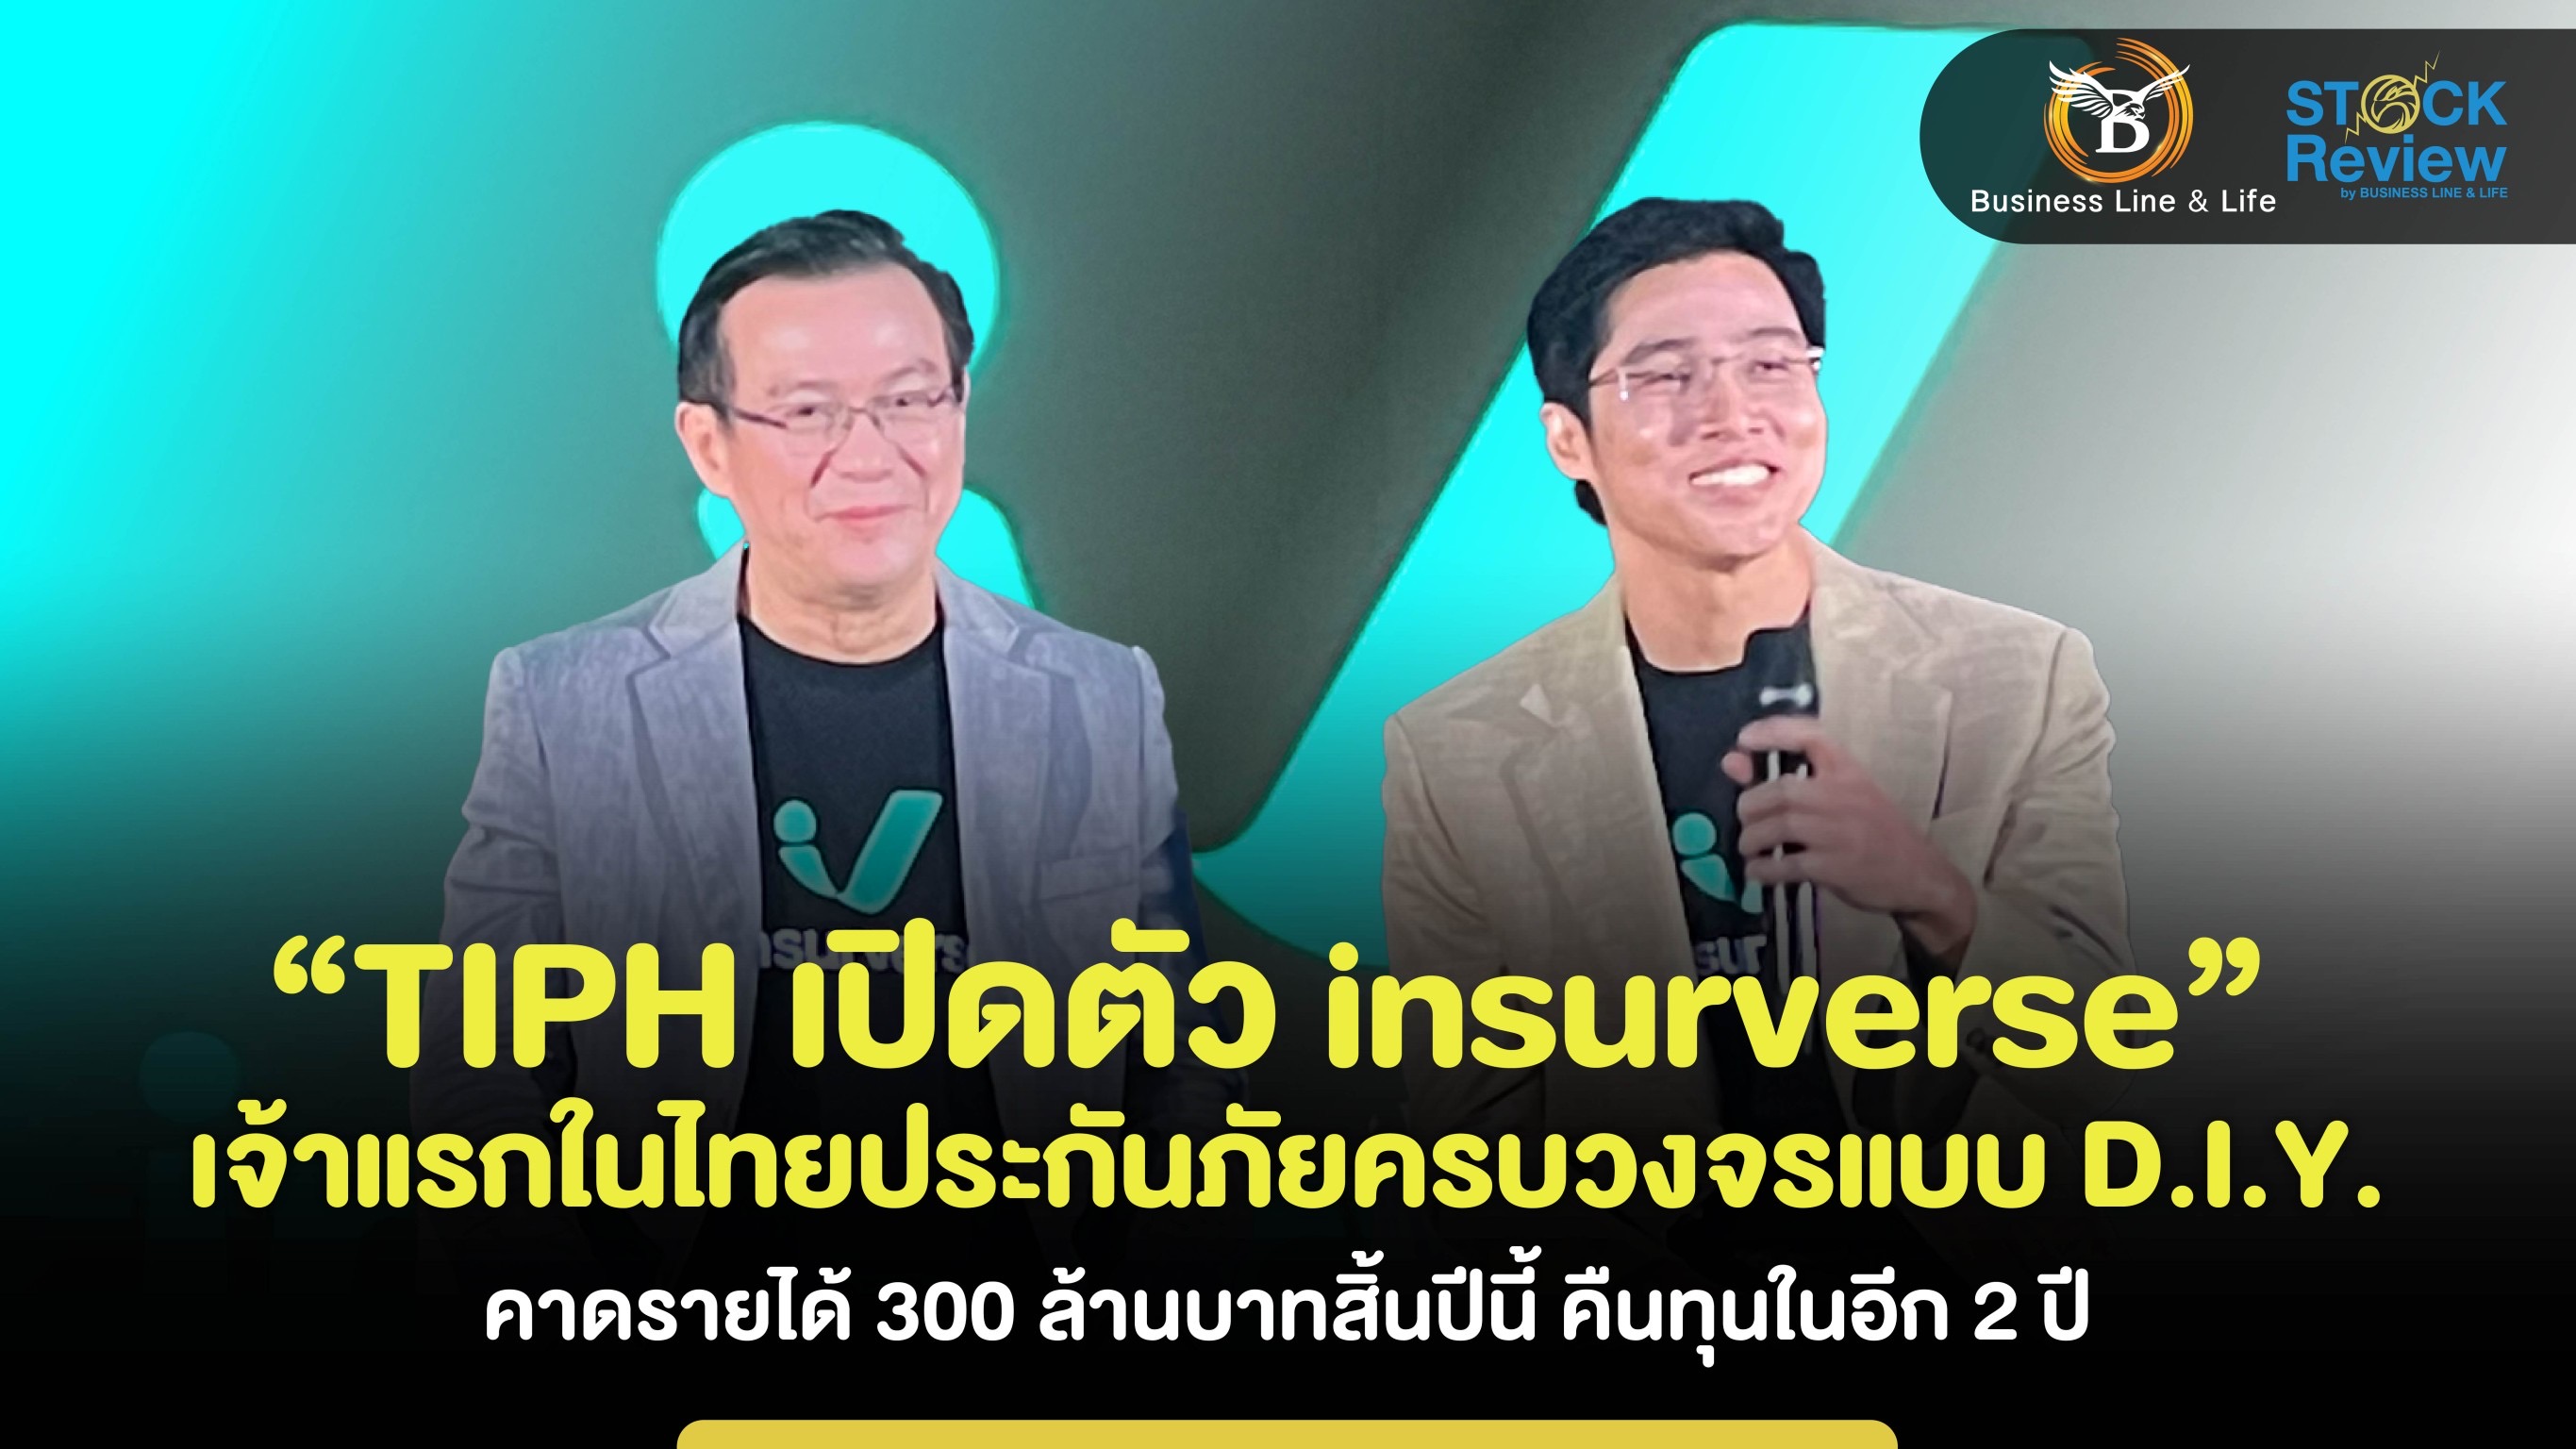 TIPH เปิดตัว “insurverse”เจ้าแรกในไทยประกันภัยครบวงจรแบบ D.I.Y. ตั้งเป้าโกยรายได้ 300 ล้านบาท